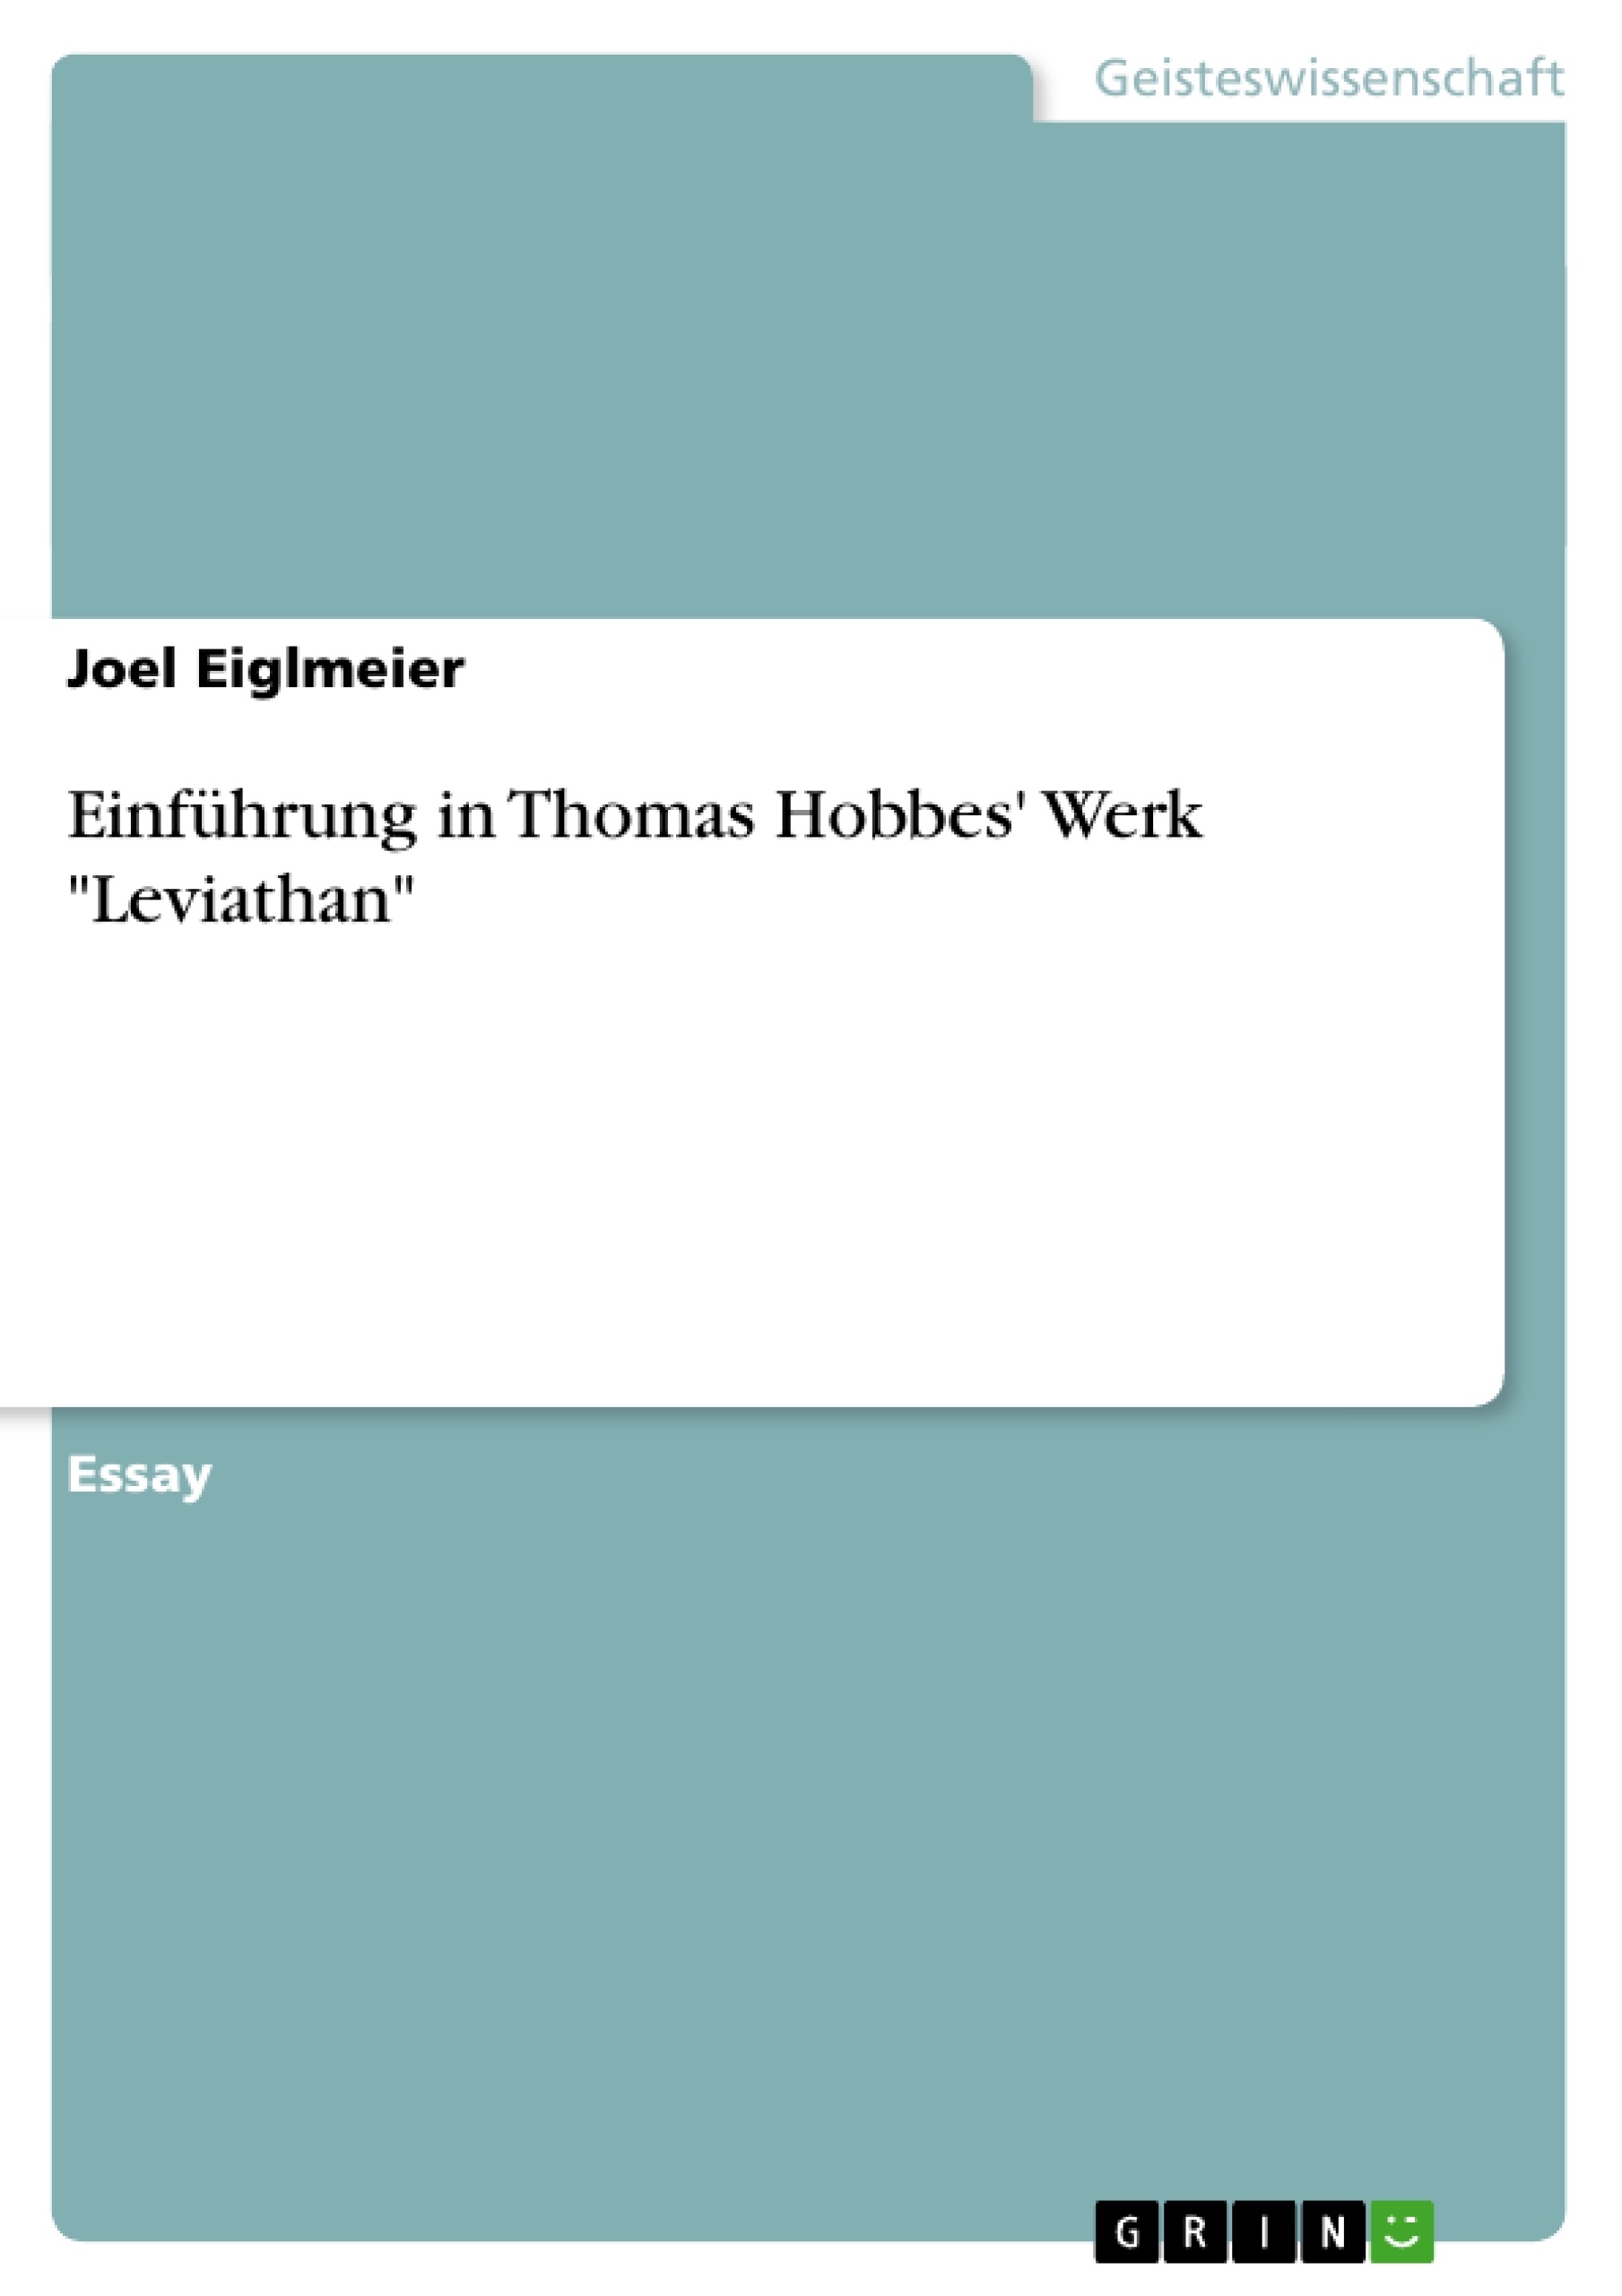 Title: Einführung in Thomas Hobbes' Werk "Leviathan"